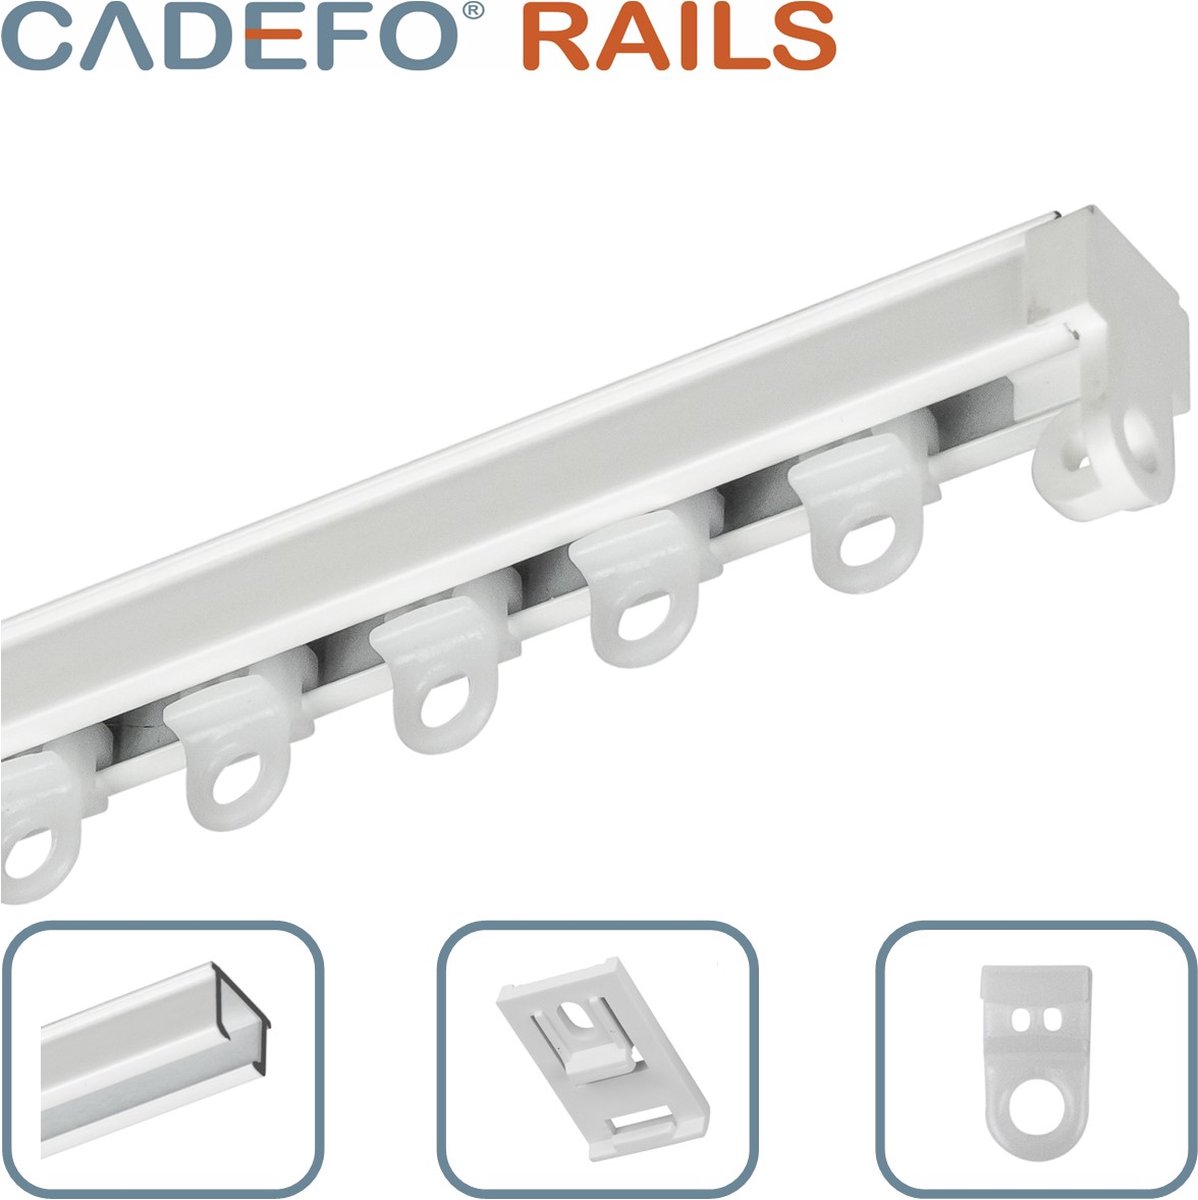 CADEFO RAILS (101 - 150 cm) Gordijnrails - Compleet op maat! - UIT 1 STUK - Leverbaar tot 6 meter - Plafondbevestiging - Lengte 132 cm